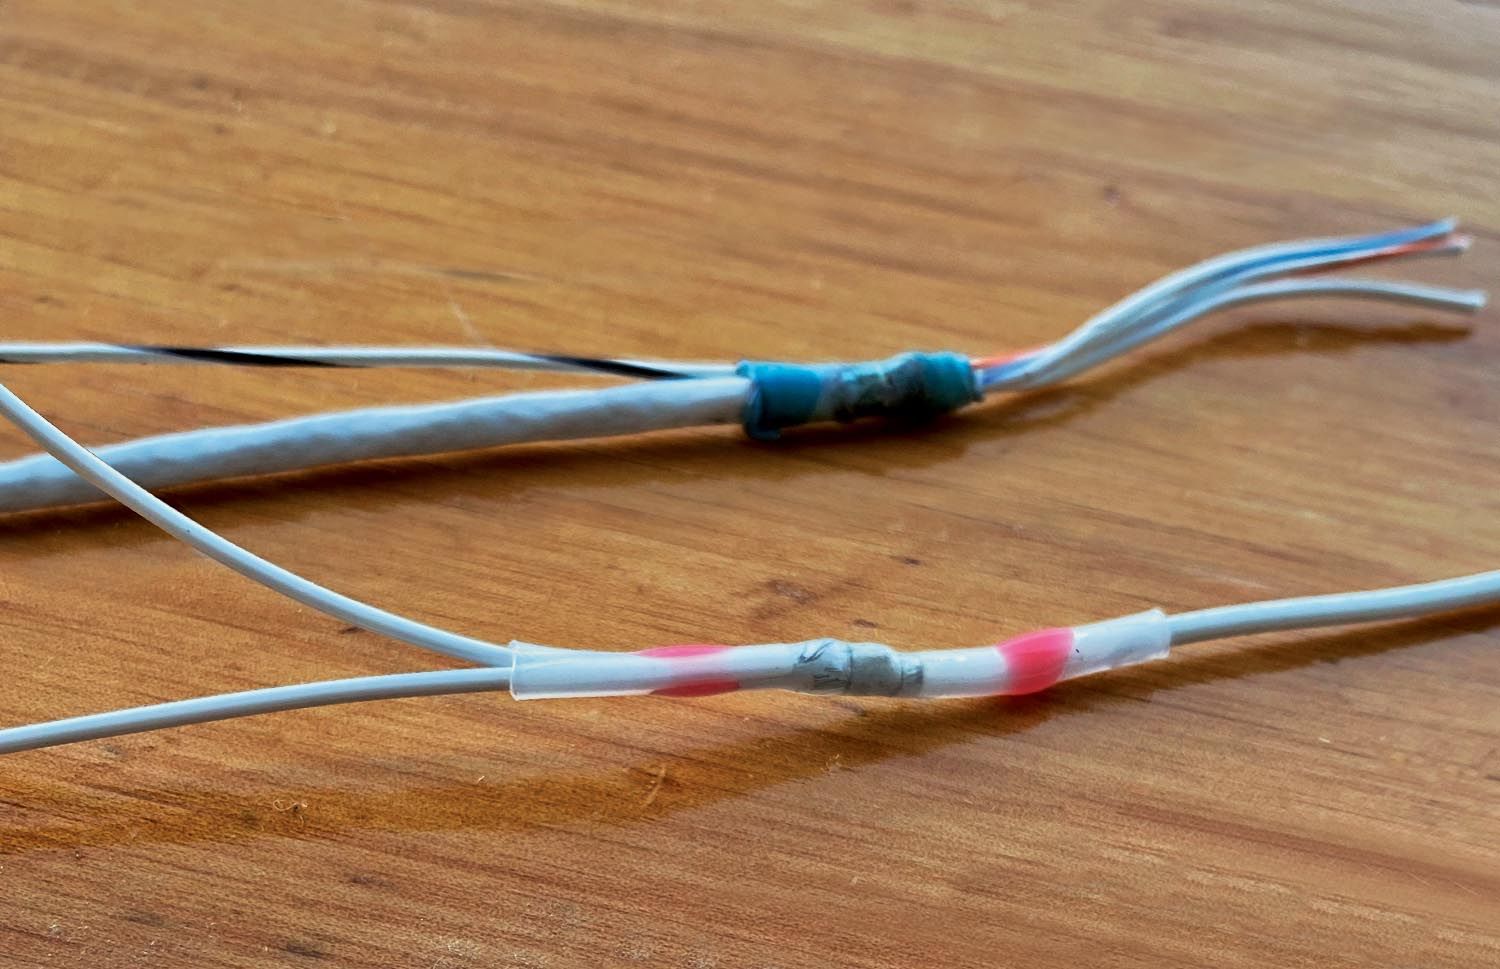 Mil-Spec Wire, 22 Gauge. Brown/Blue